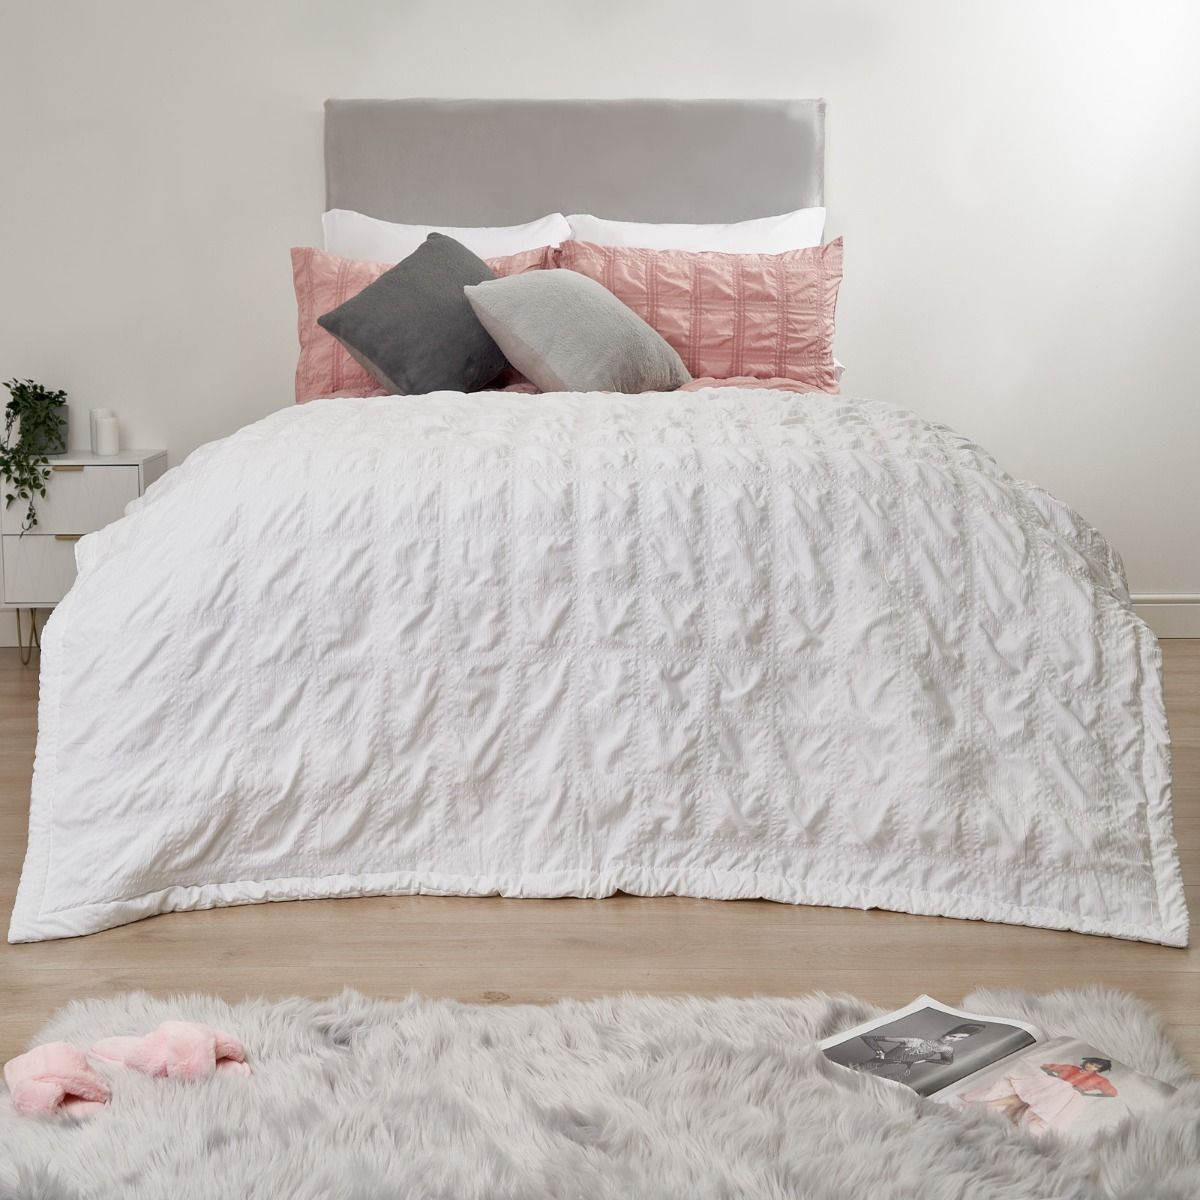 Sienna Seersucker Bedspread Throw - White